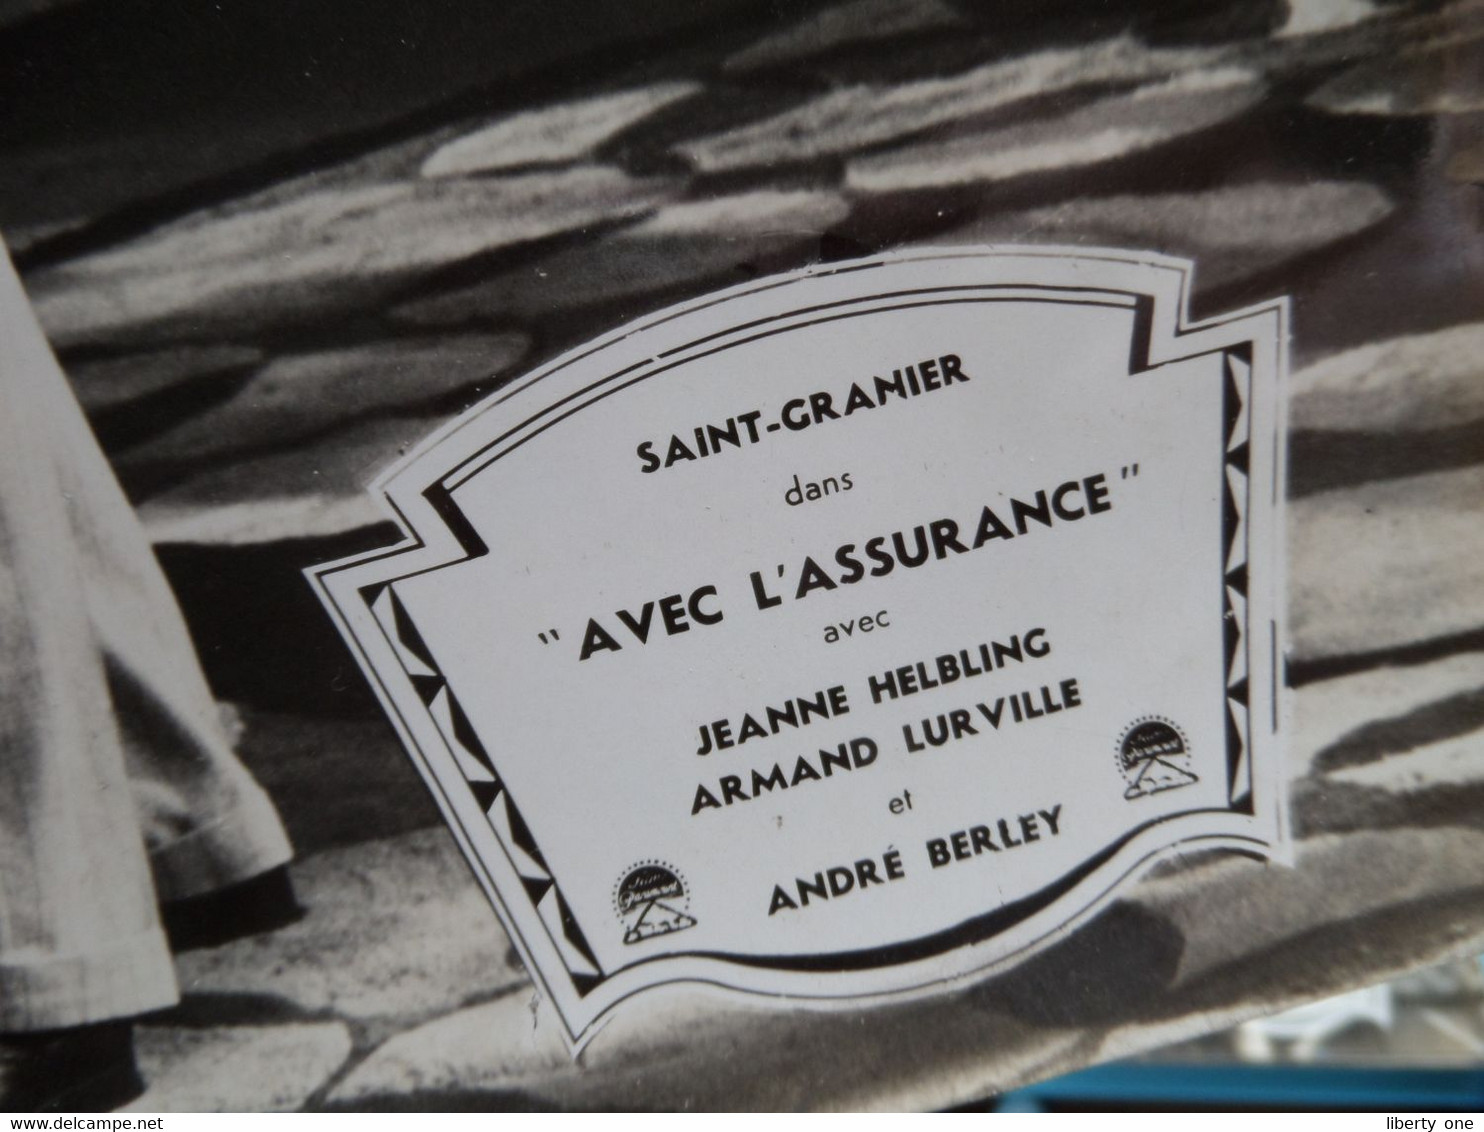 Saint-Granier Dans " AVEC L'ASSURANCE " Jeanne Helbling, Armand Lurville Et André Berley ( Photo Size 30 X 45 Cm.)! - Foto's